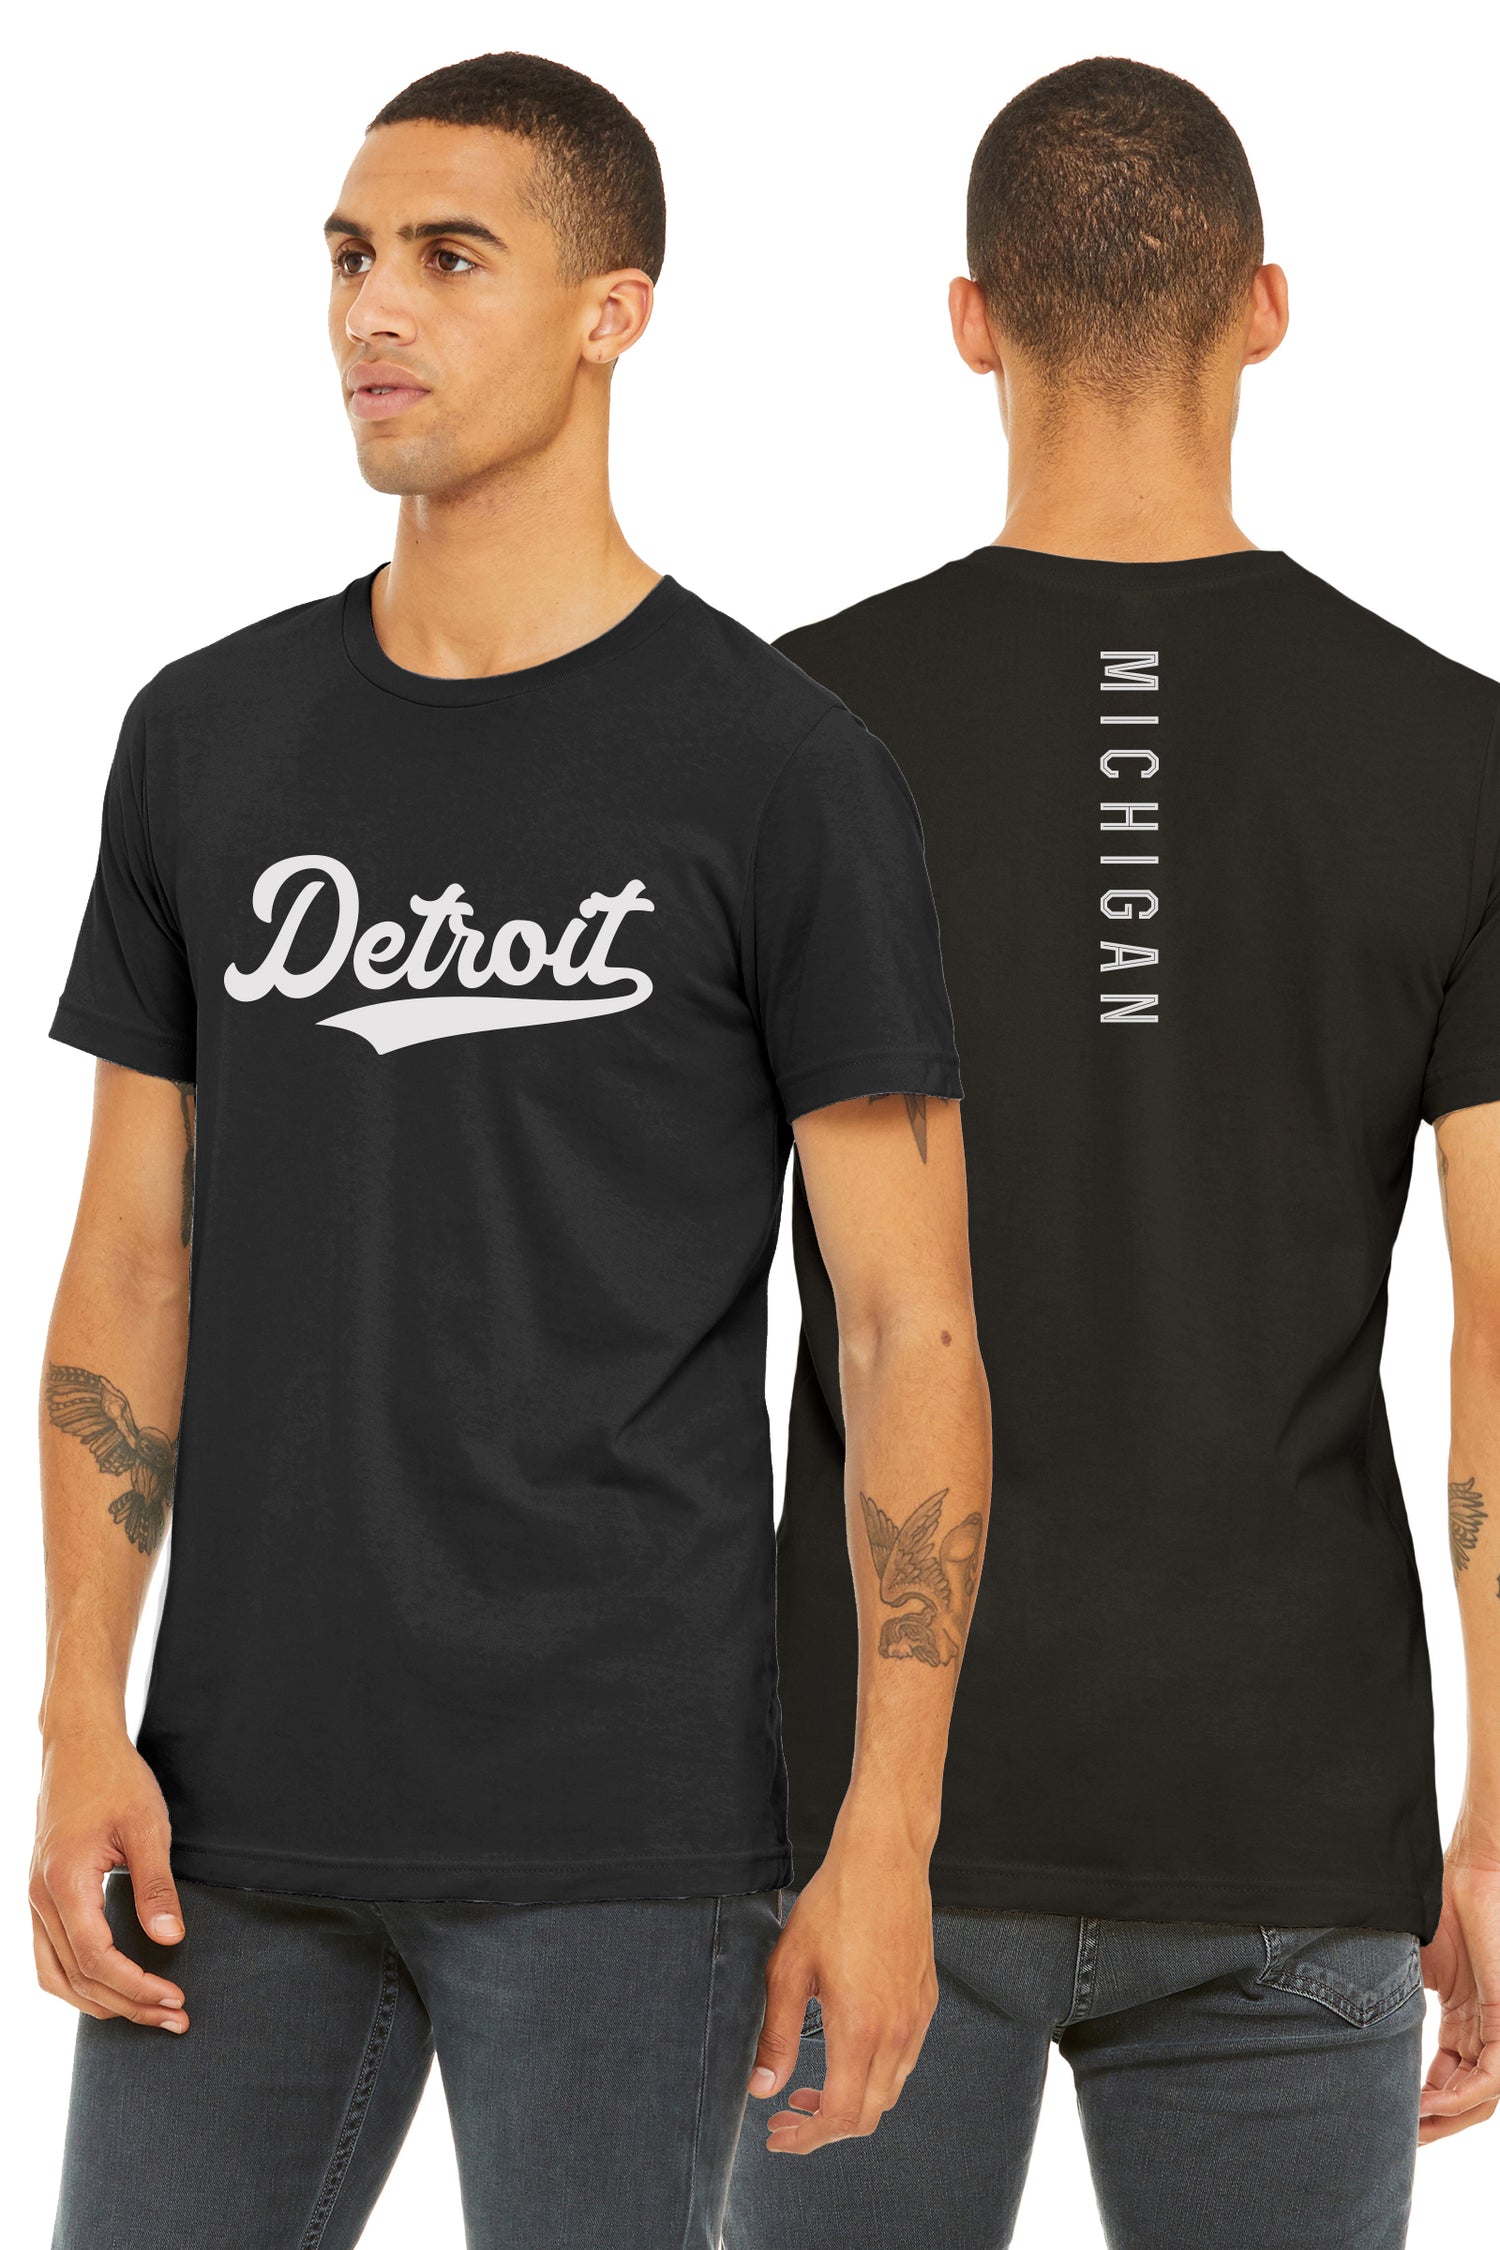 Detroit Clothing